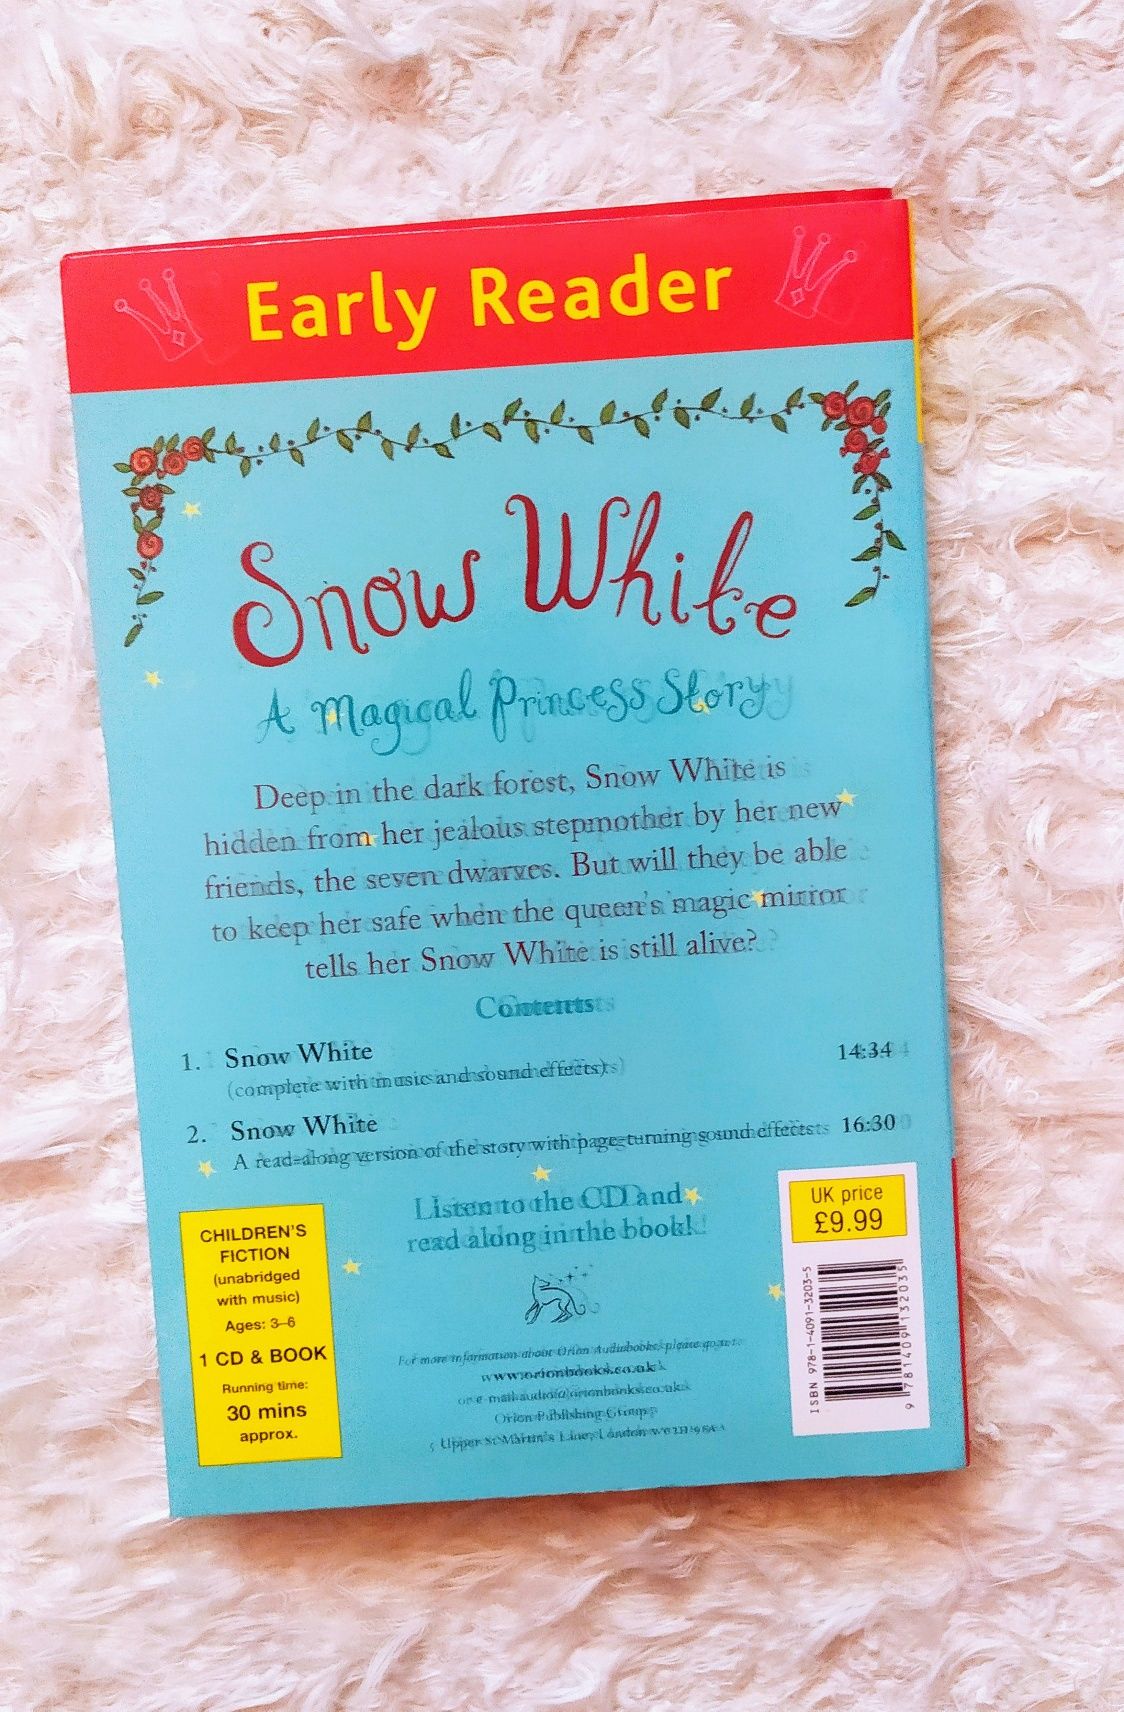 Snow White bajka dla dzieci po angielsku